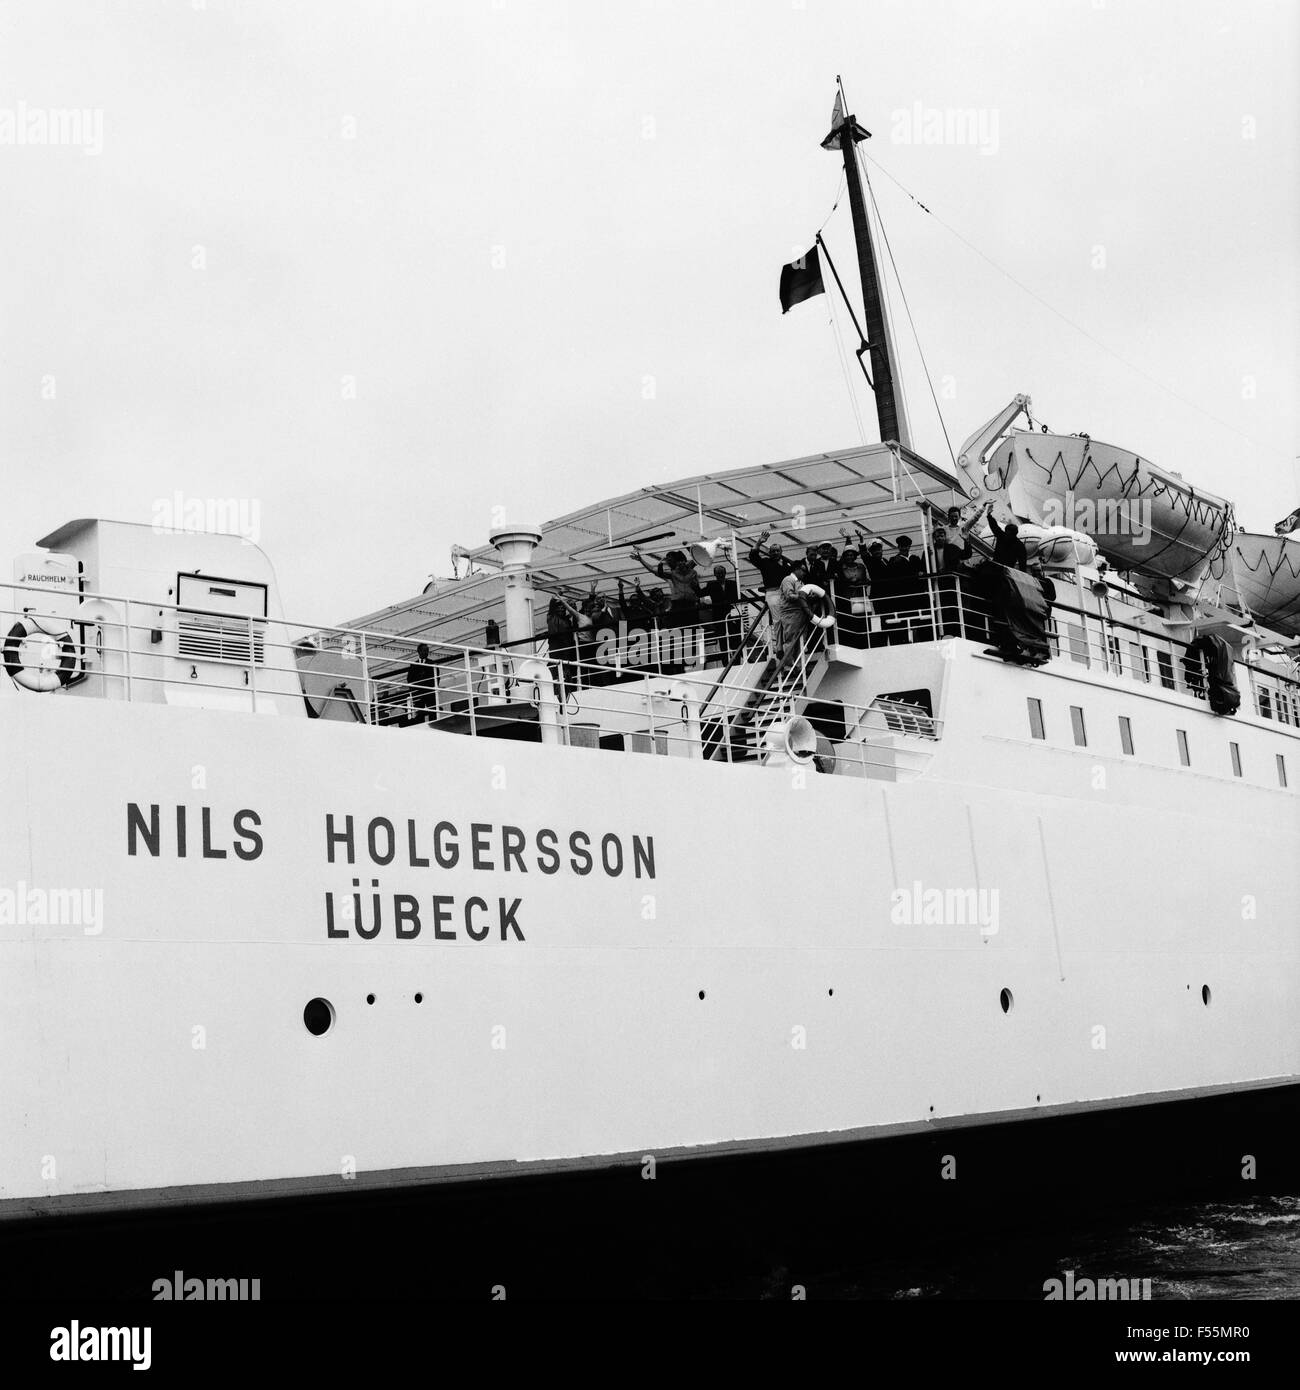 Das Schiff 'Nils Holgersson' der TT-Line, Deutschland 1960er Jahre. Vessel 'Nils Holgersson' of TT line, Germany 1960s. Stock Photo